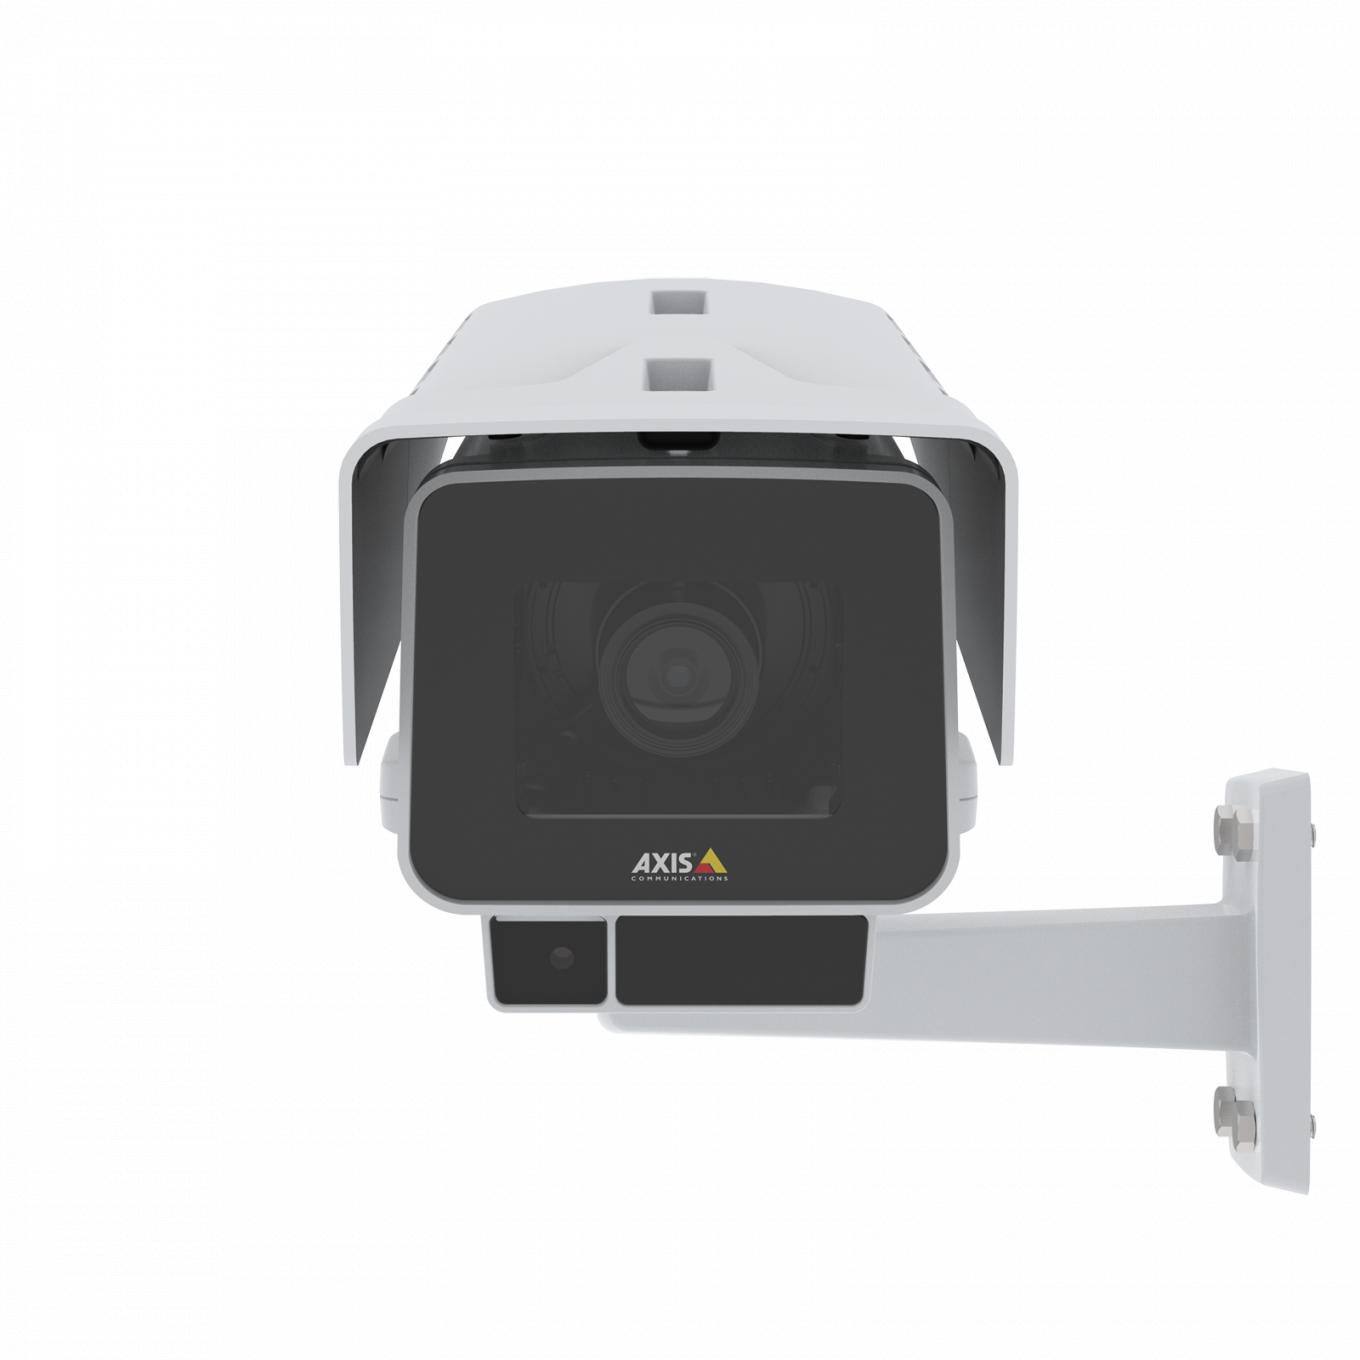 La caméra AXIS P1378-LE IP Camera dispose de la stabilisation d'image électronique et d'OptimizedIR. Le produit est vu de face.